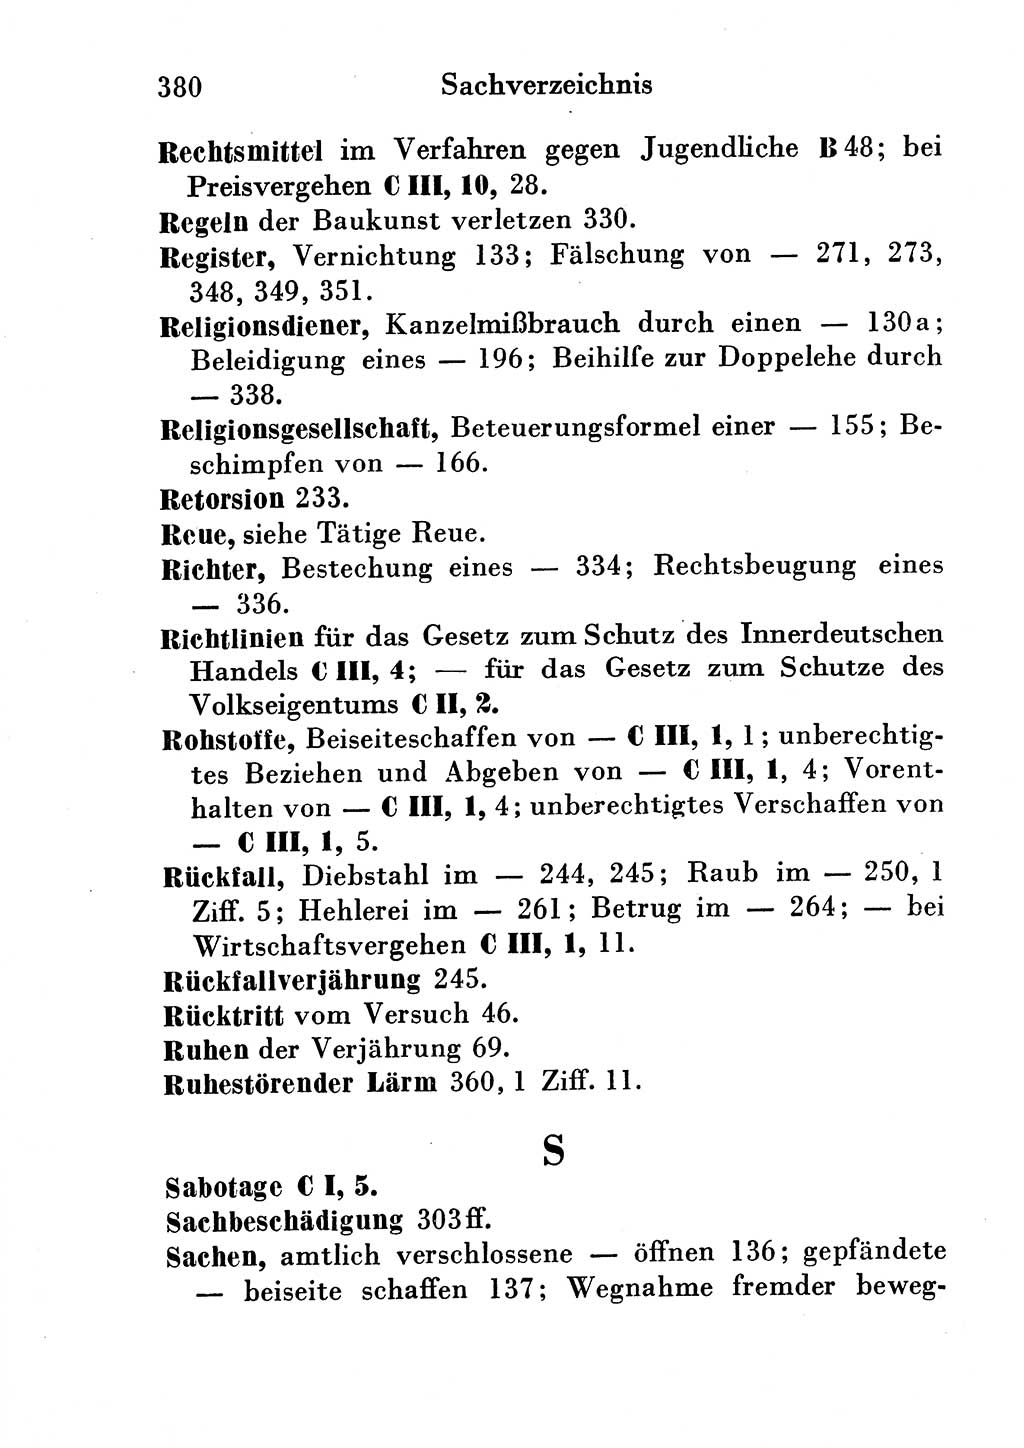 Strafgesetzbuch (StGB) und andere Strafgesetze [Deutsche Demokratische Republik (DDR)] 1954, Seite 380 (StGB Strafges. DDR 1954, S. 380)